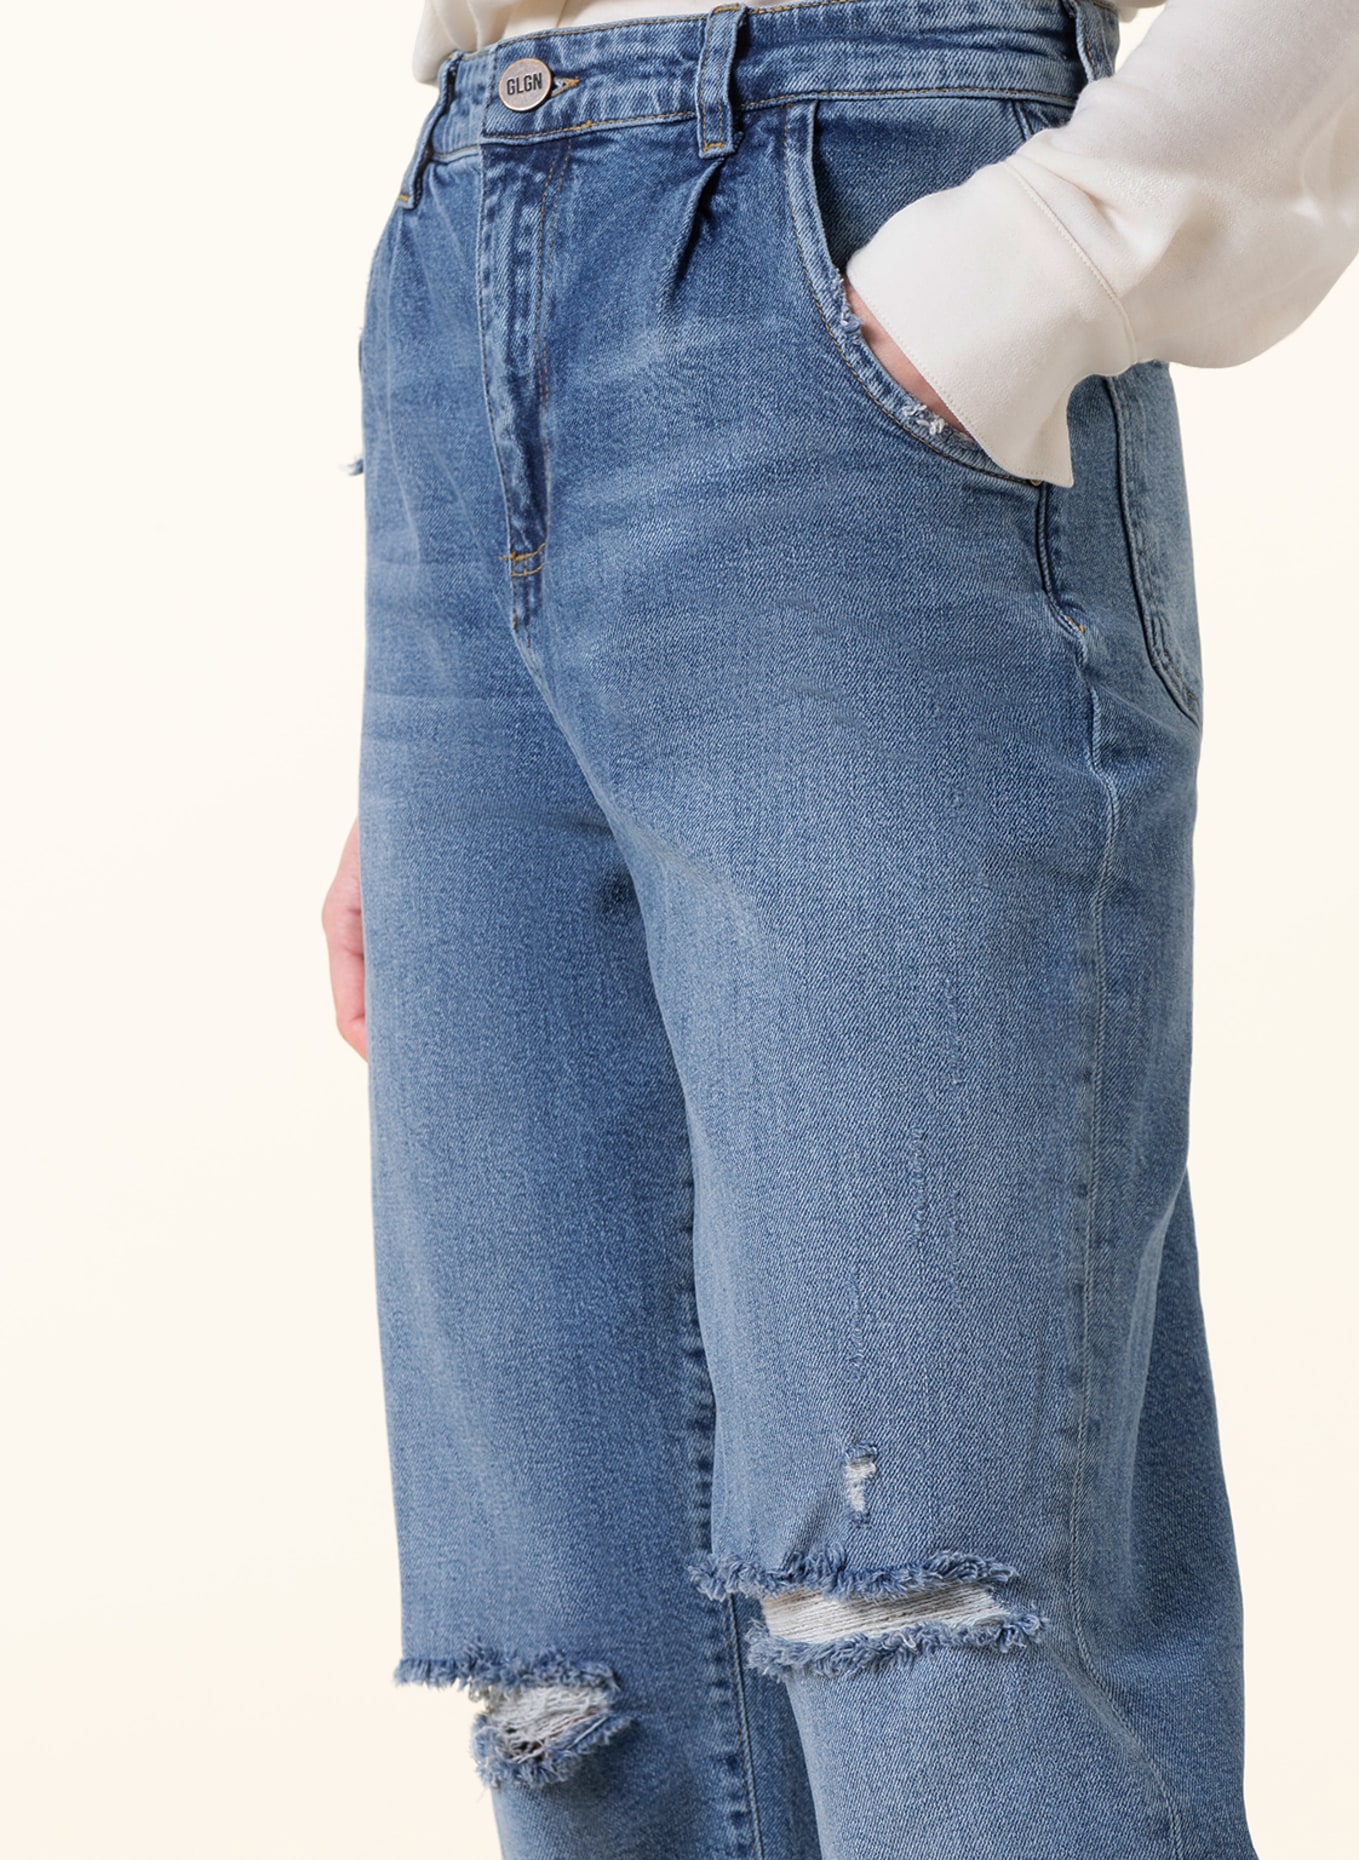 GOLDGARN DENIM Mom jeans OSTSTADT, Color: 1010 vibtageblue (Image 5)